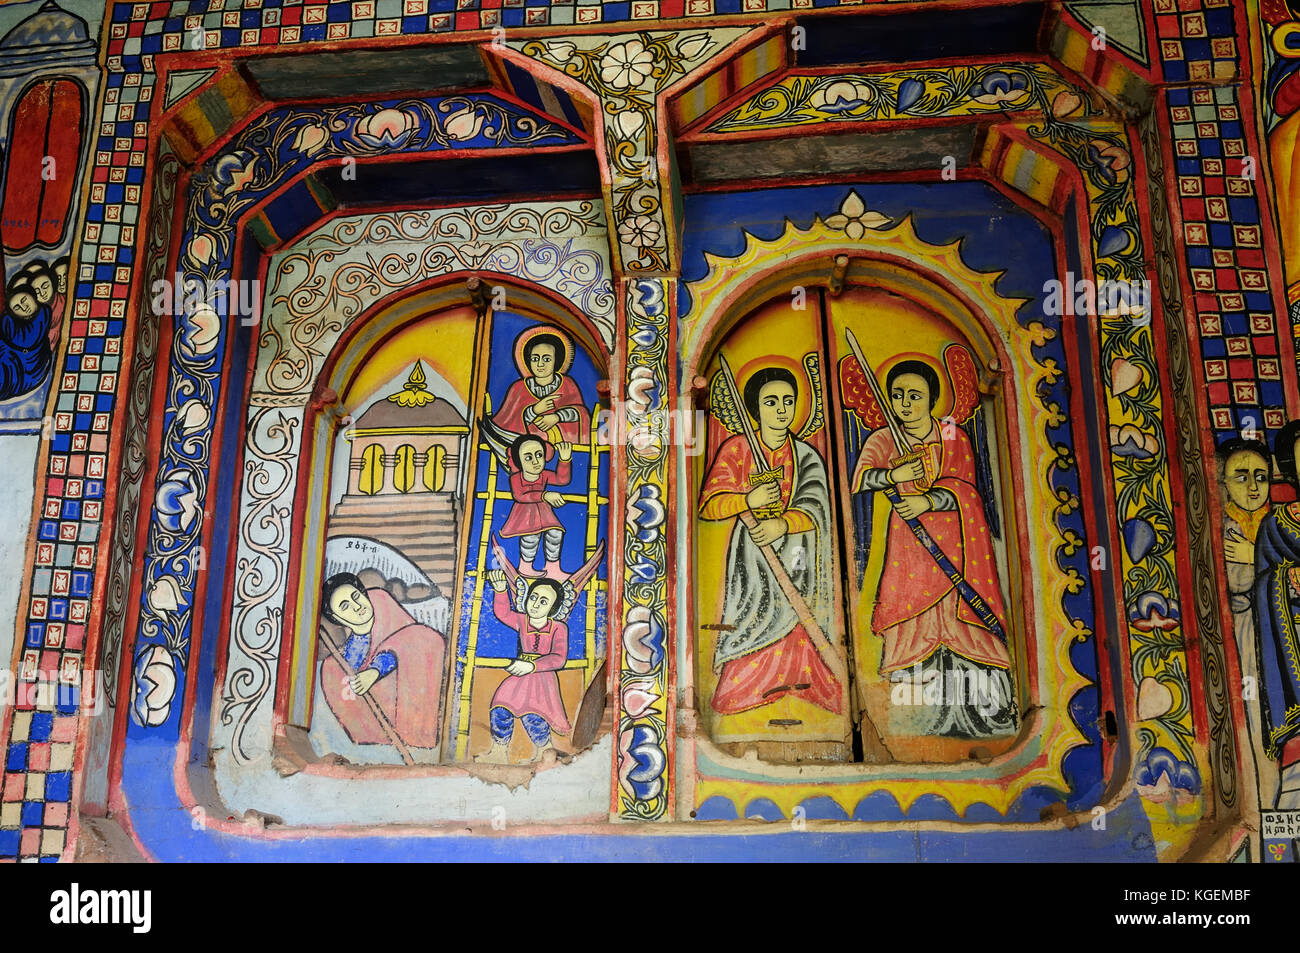 Le immagini sacre sulla parete presso la chiesa ortodossa nella zona del lago Tana in Etiopia Foto Stock